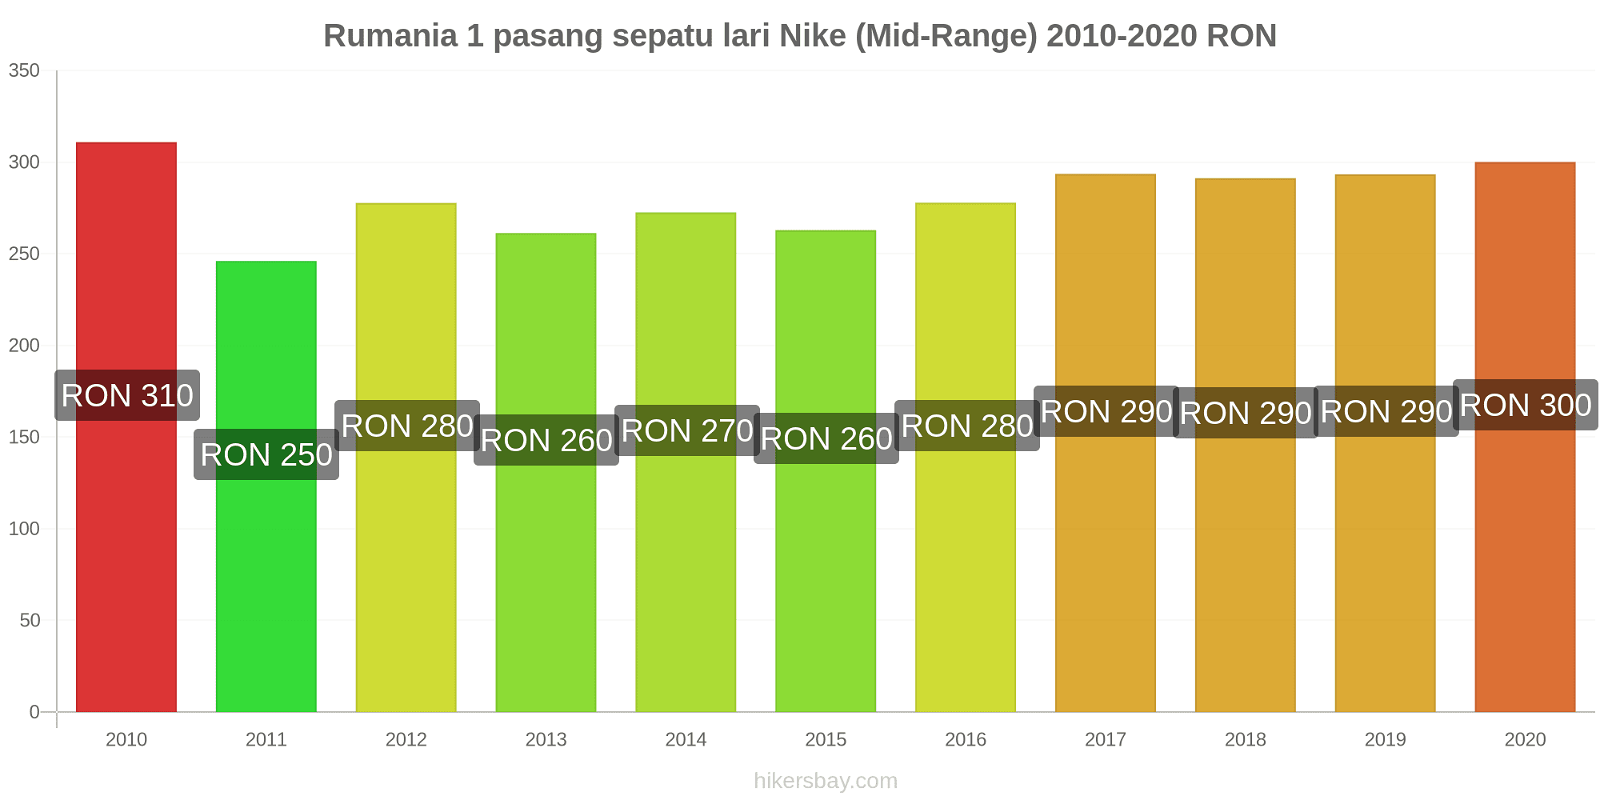 Rumania perubahan harga 1 pasang sepatu lari Nike (Mid-Range) hikersbay.com